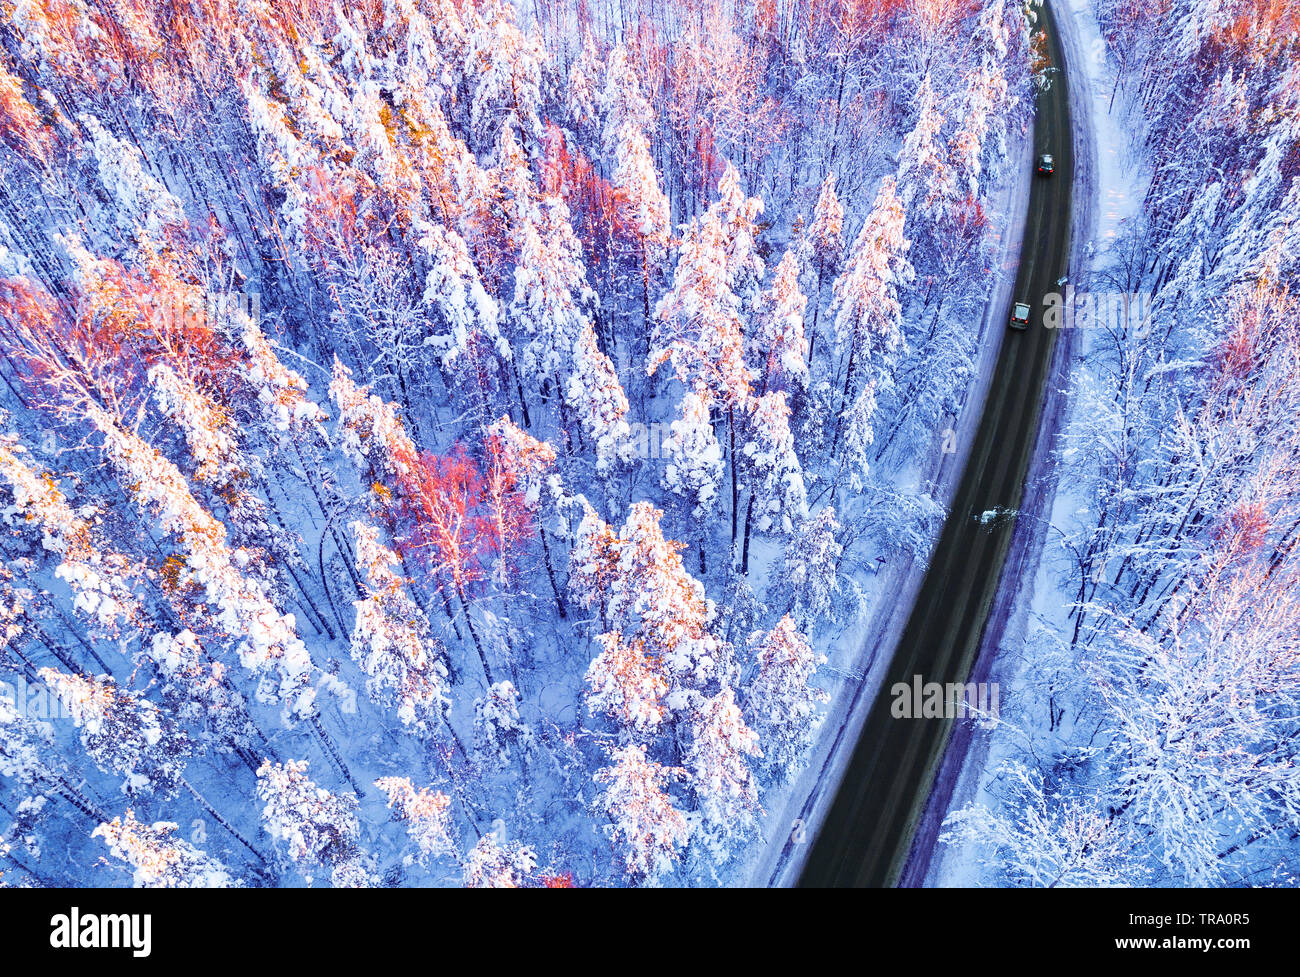 Luftaufnahme von einem Auto auf Winter Straße in den Wald. Winter Landschaft Landschaft. Luftaufnahmen von verschneiten Wald mit einem Auto auf der Straße. Erfasst f Stockfoto